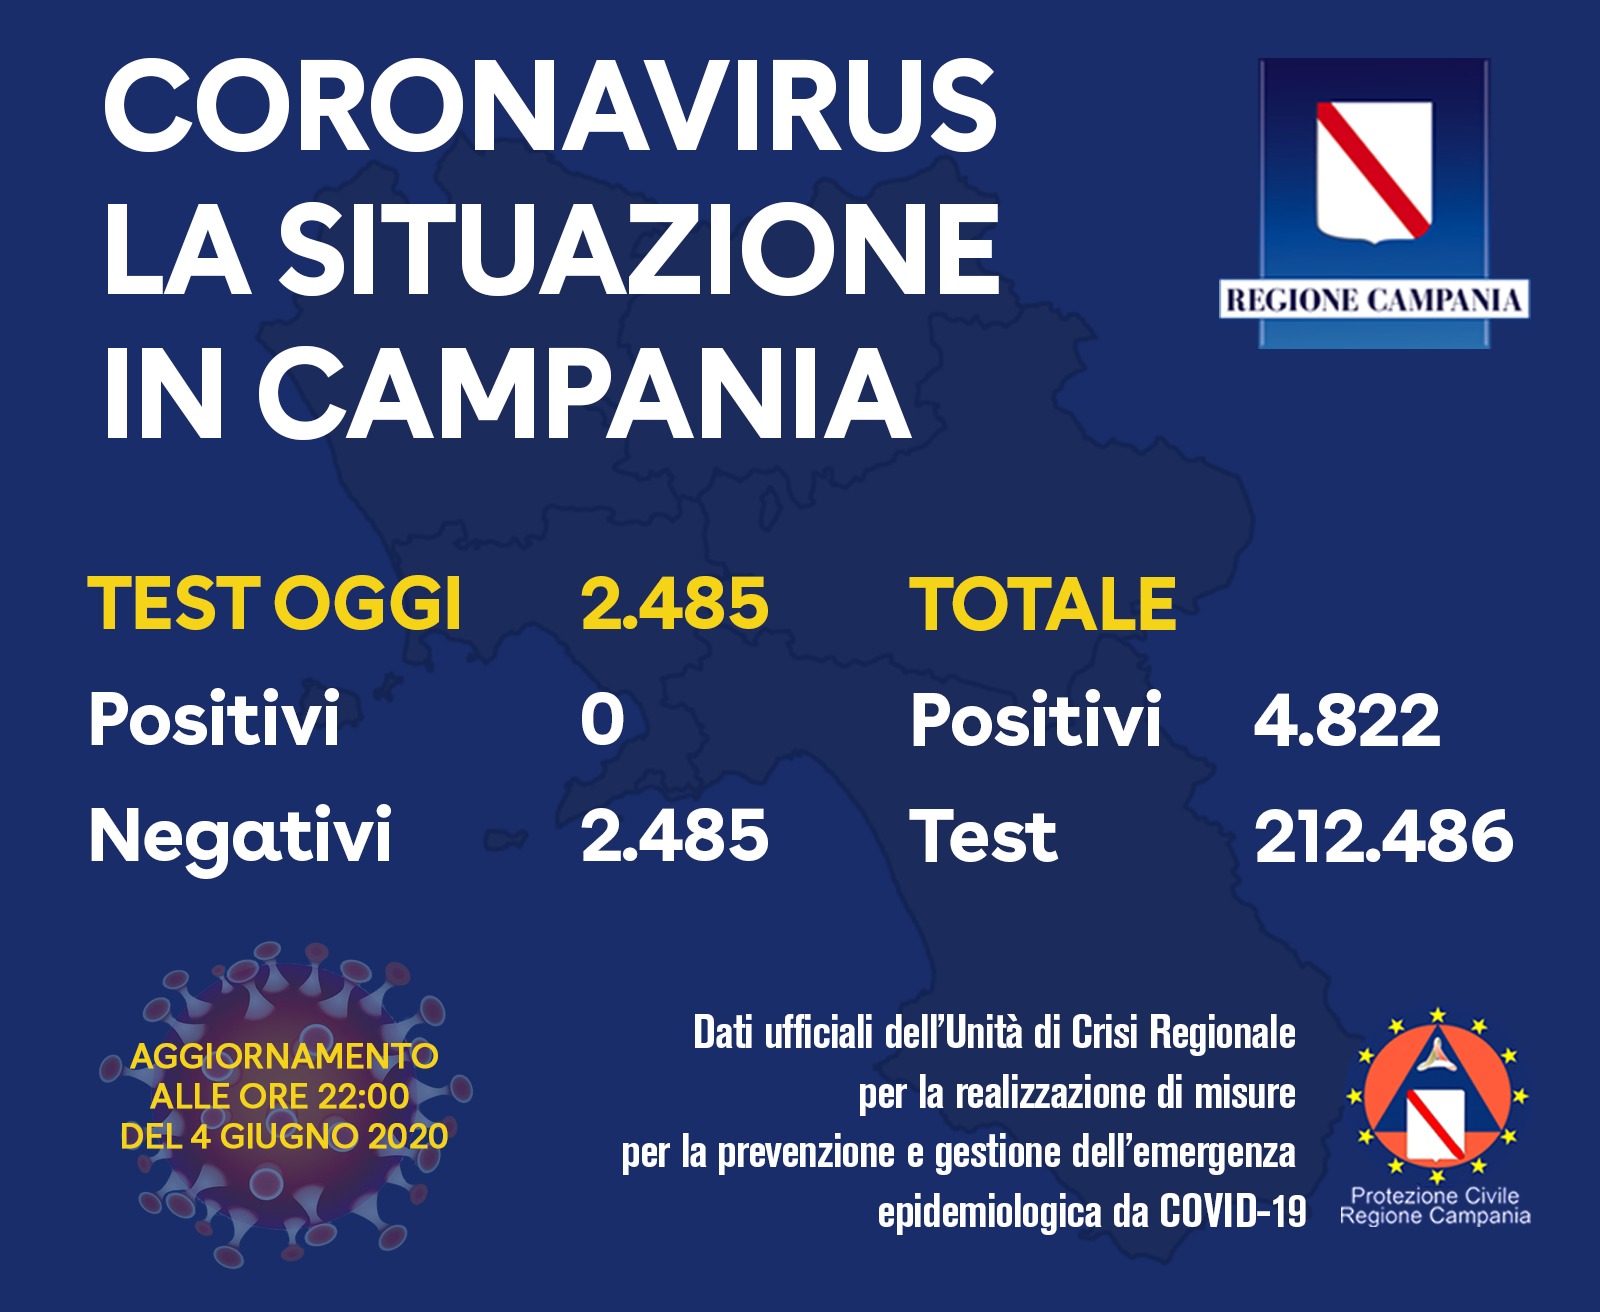 Coronavirus Campania, per la prima volta 0 positivi